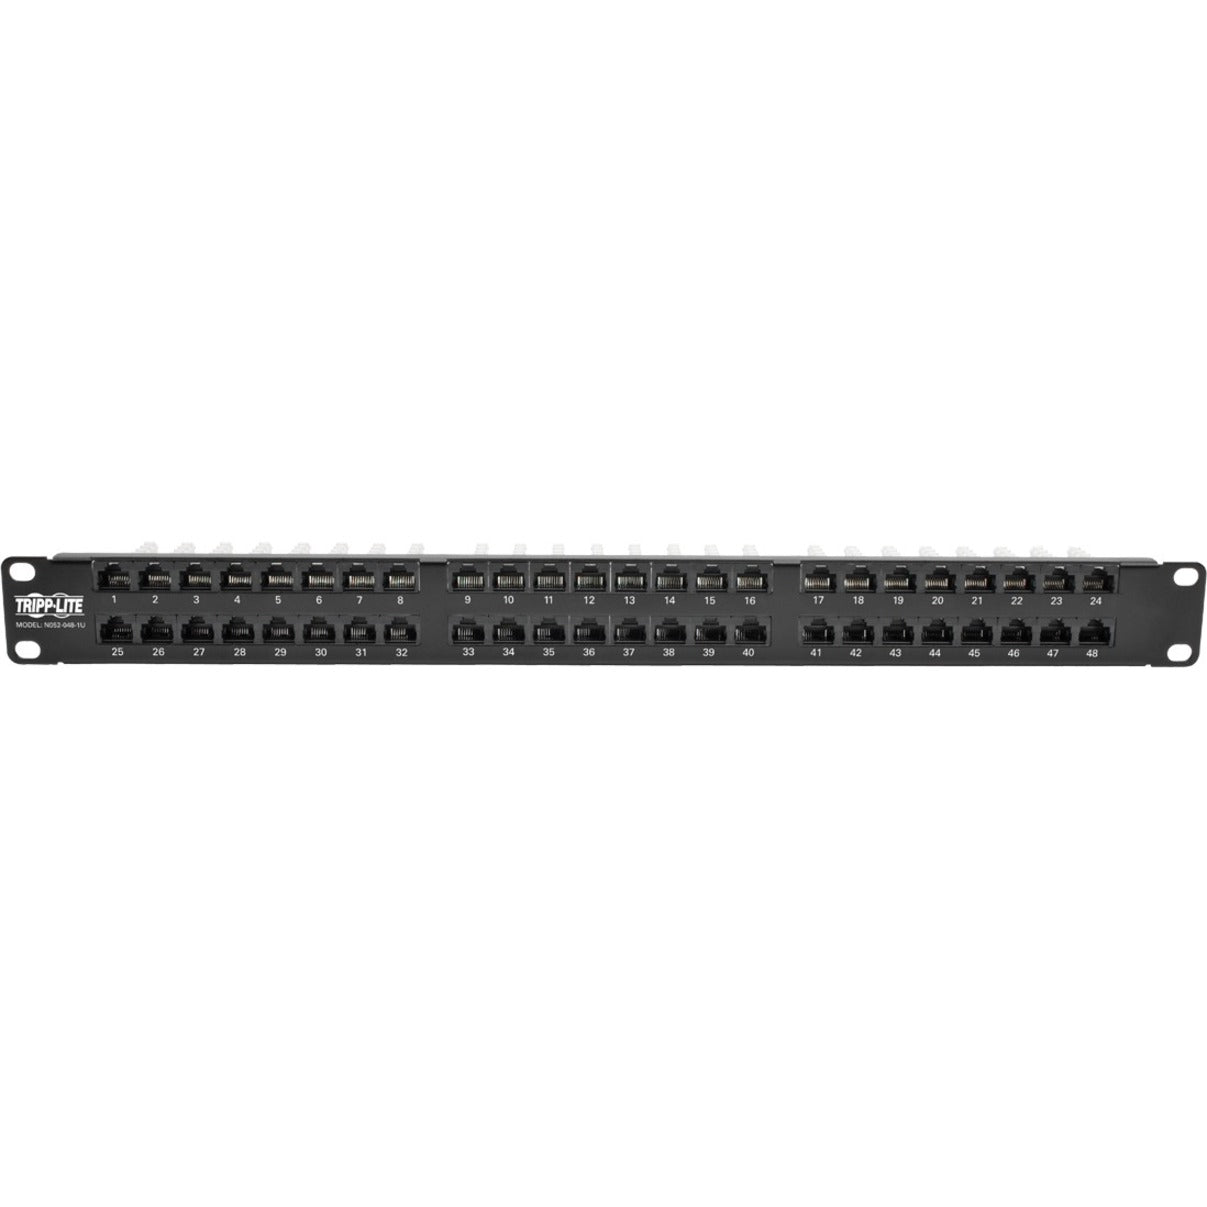 Tripp Lite N052-048-1U 48-Port 1U Rack-Mount High-Density Patch Panel, TAA Compliant, Lifetime Warranty